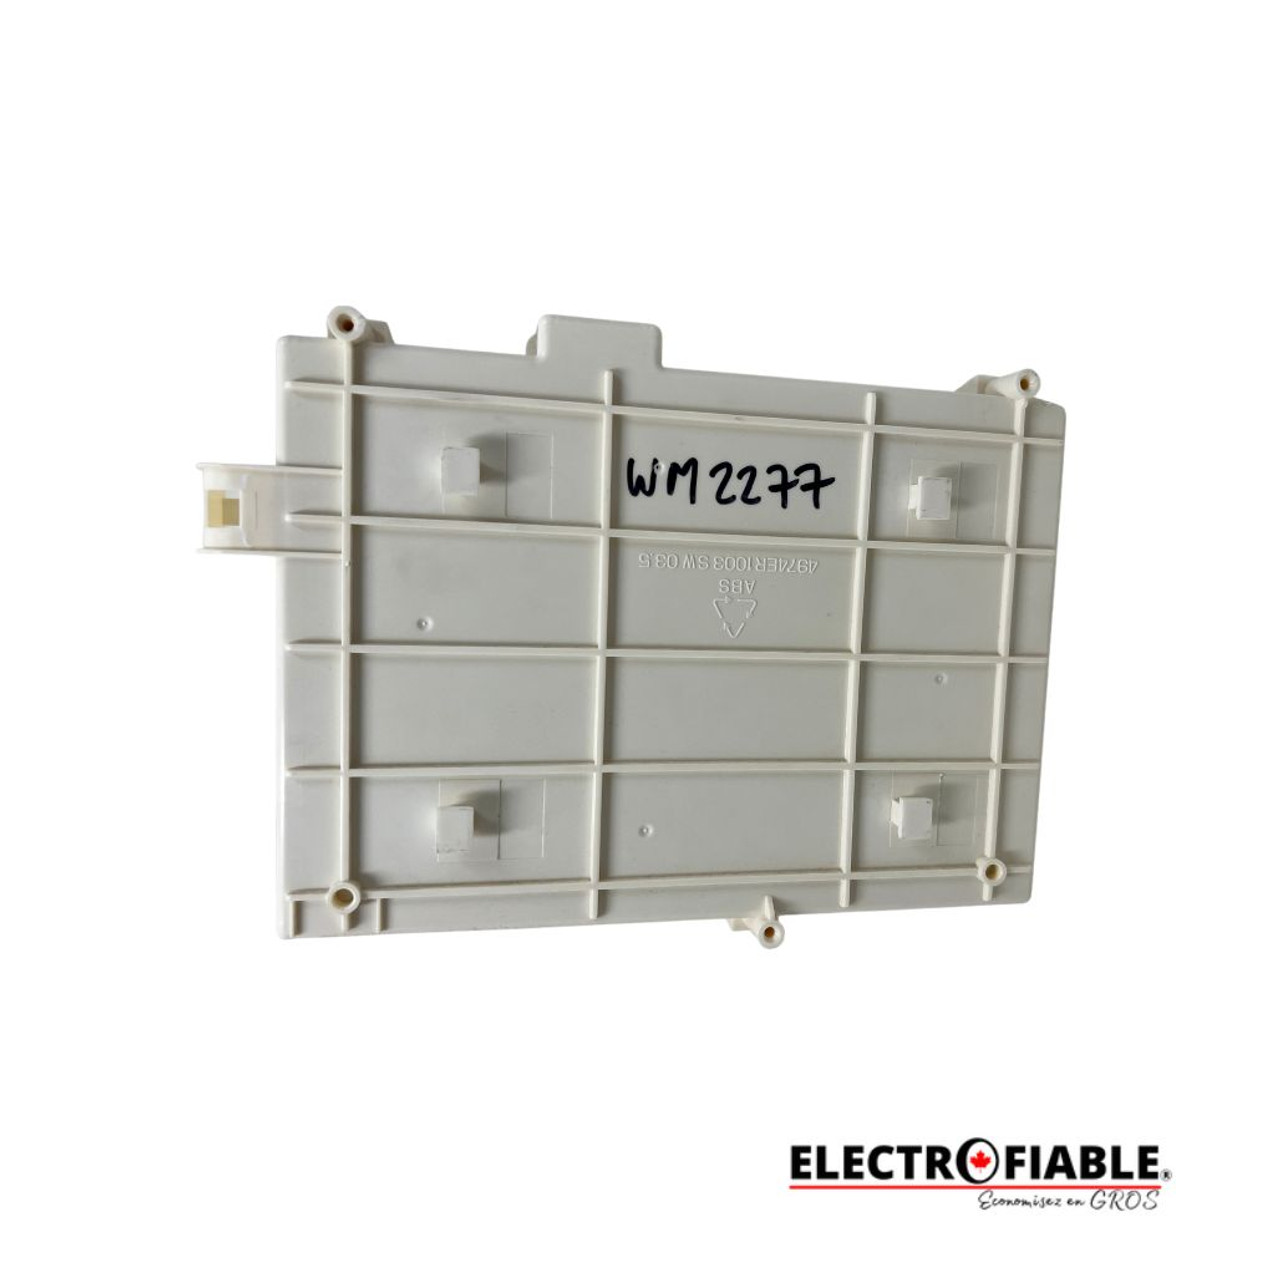 6871ER1087C Power control board for LG washer WM2277HW